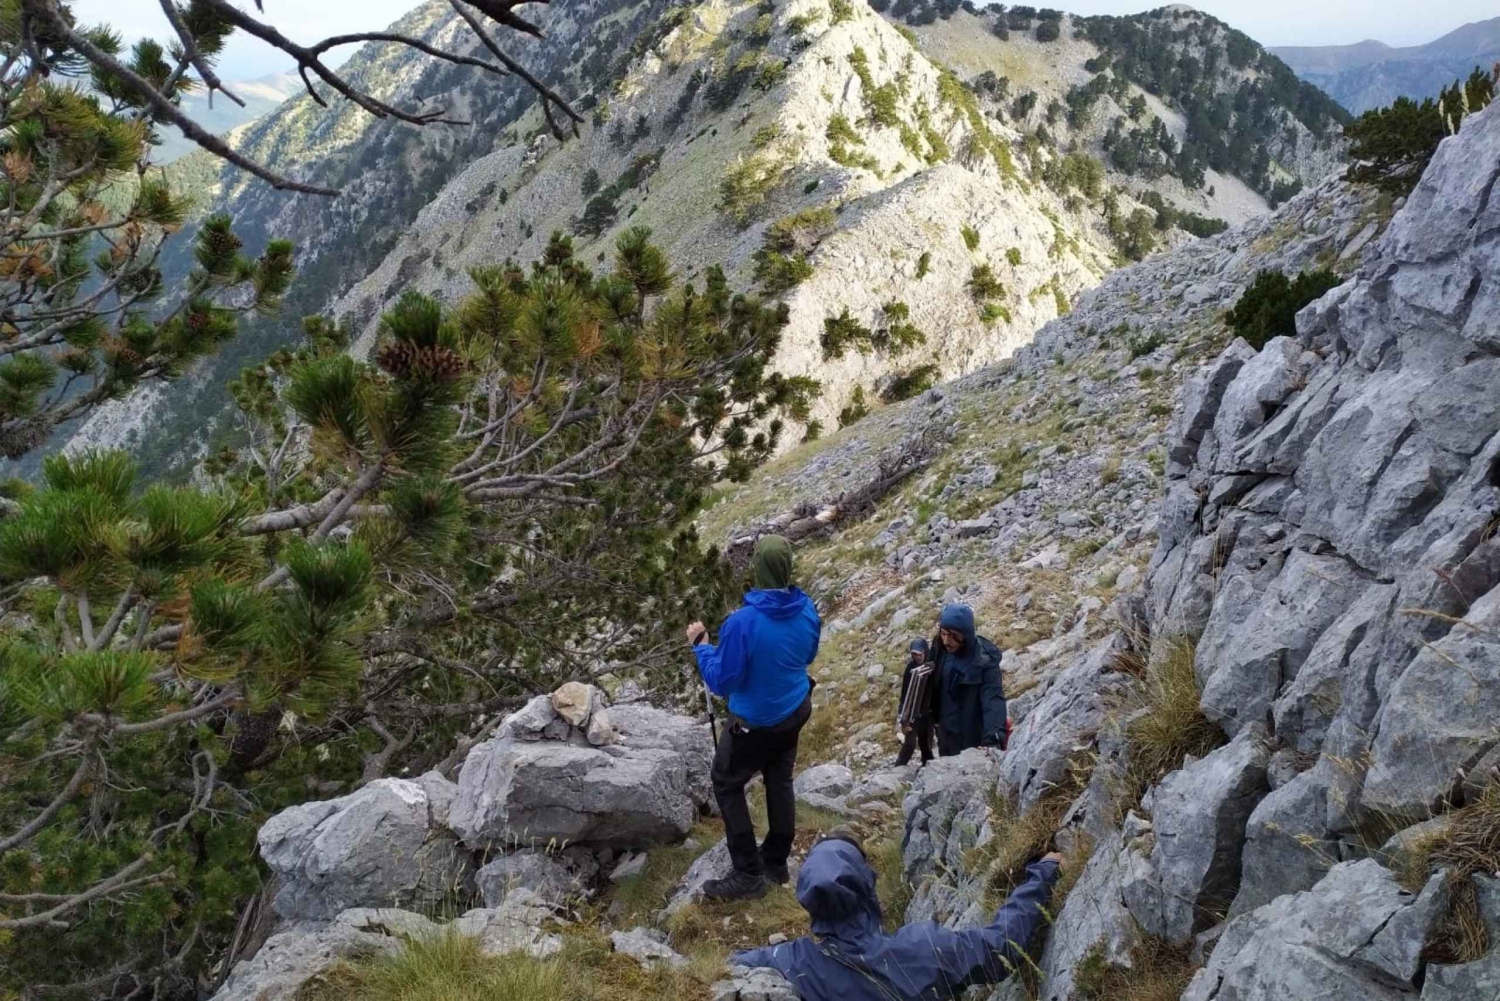 Vlore: Caminhadas em Cika Peak, sul da Albânia